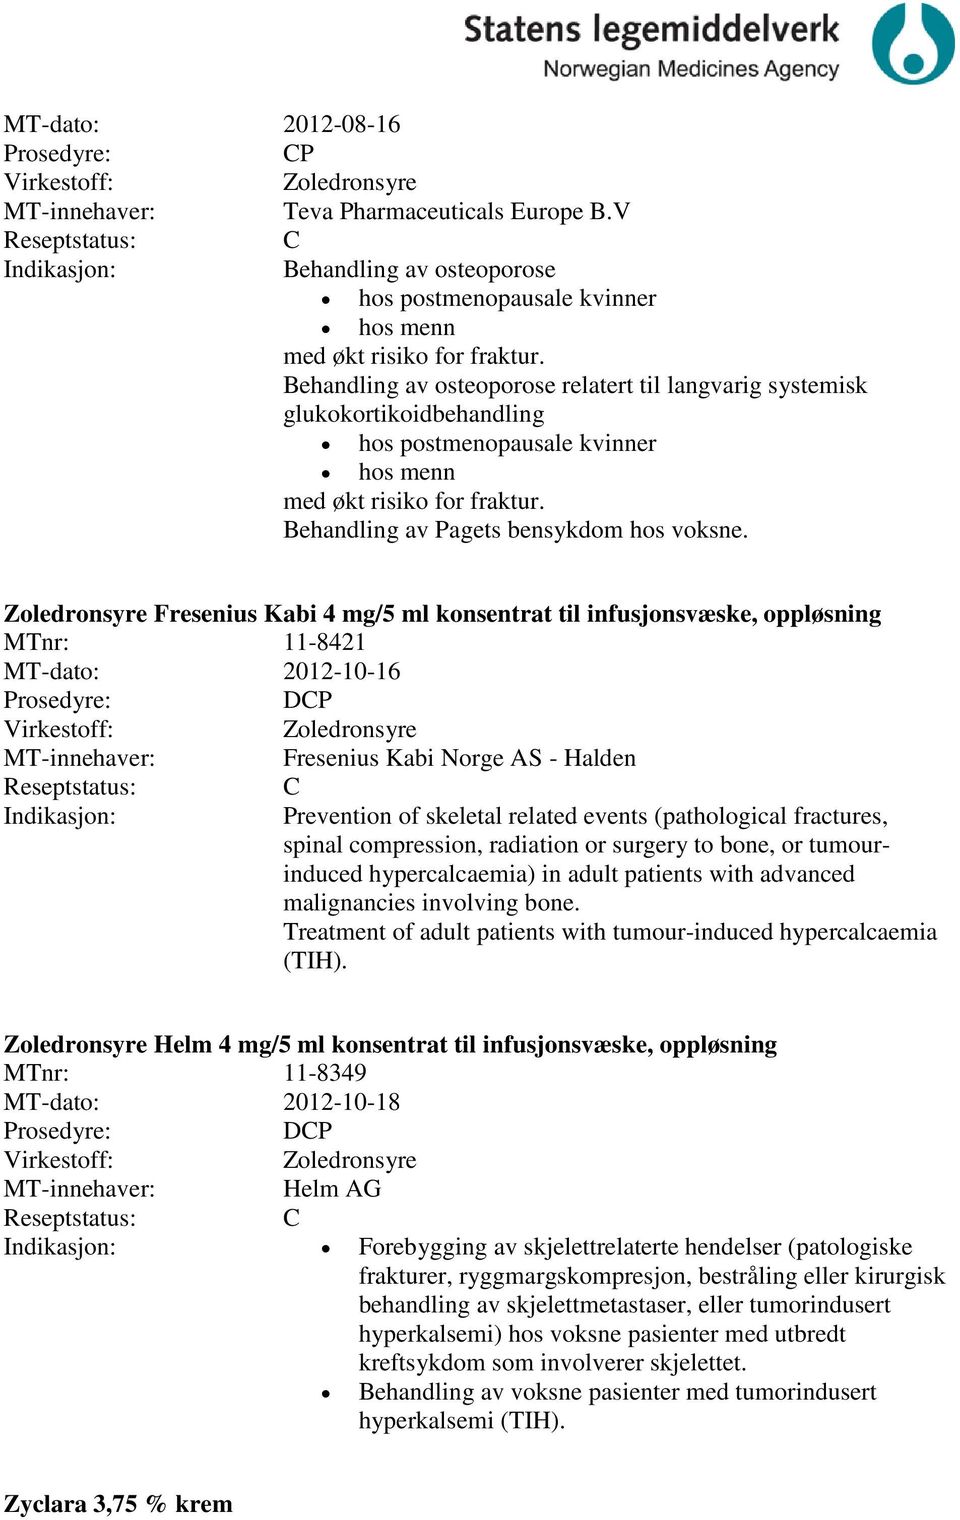 Zoledronsyre Fresenius Kabi 4 mg/5 ml konsentrat til infusjonsvæske, oppløsning MTnr: 11-8421 MT-dato: 2012-10-16 DP Zoledronsyre Fresenius Kabi Norge AS - Halden Prevention of skeletal related